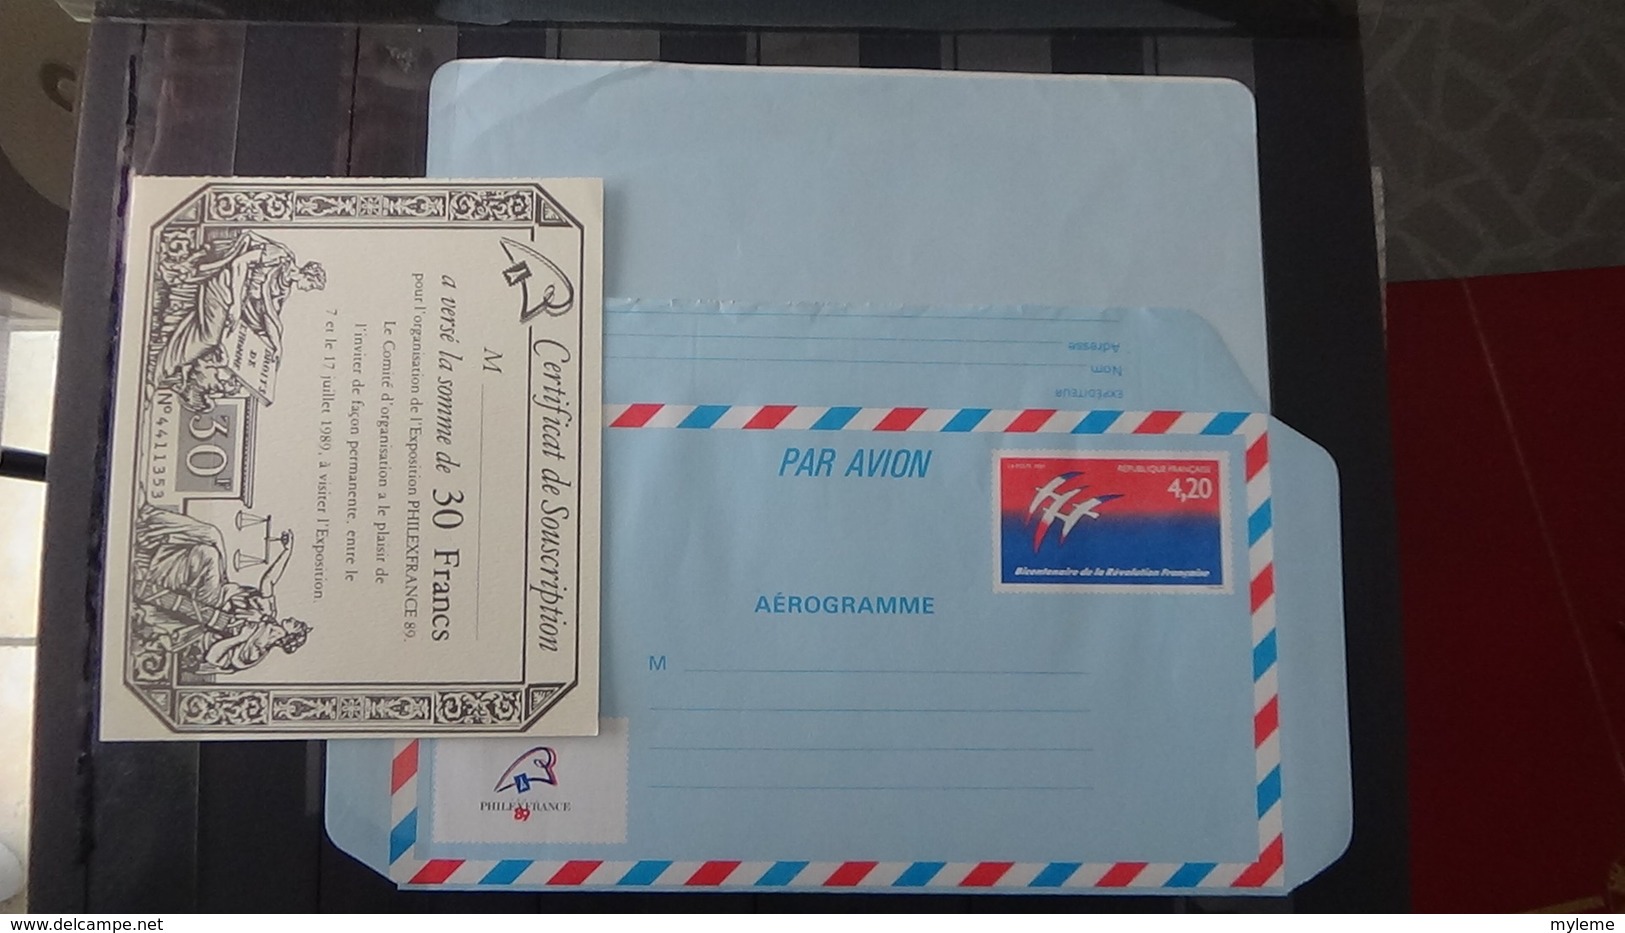 Bon lot de timbres et blocs avec oblitération 1er de France et quelques fin de catalogue aérogrammes .... A saisir !!!